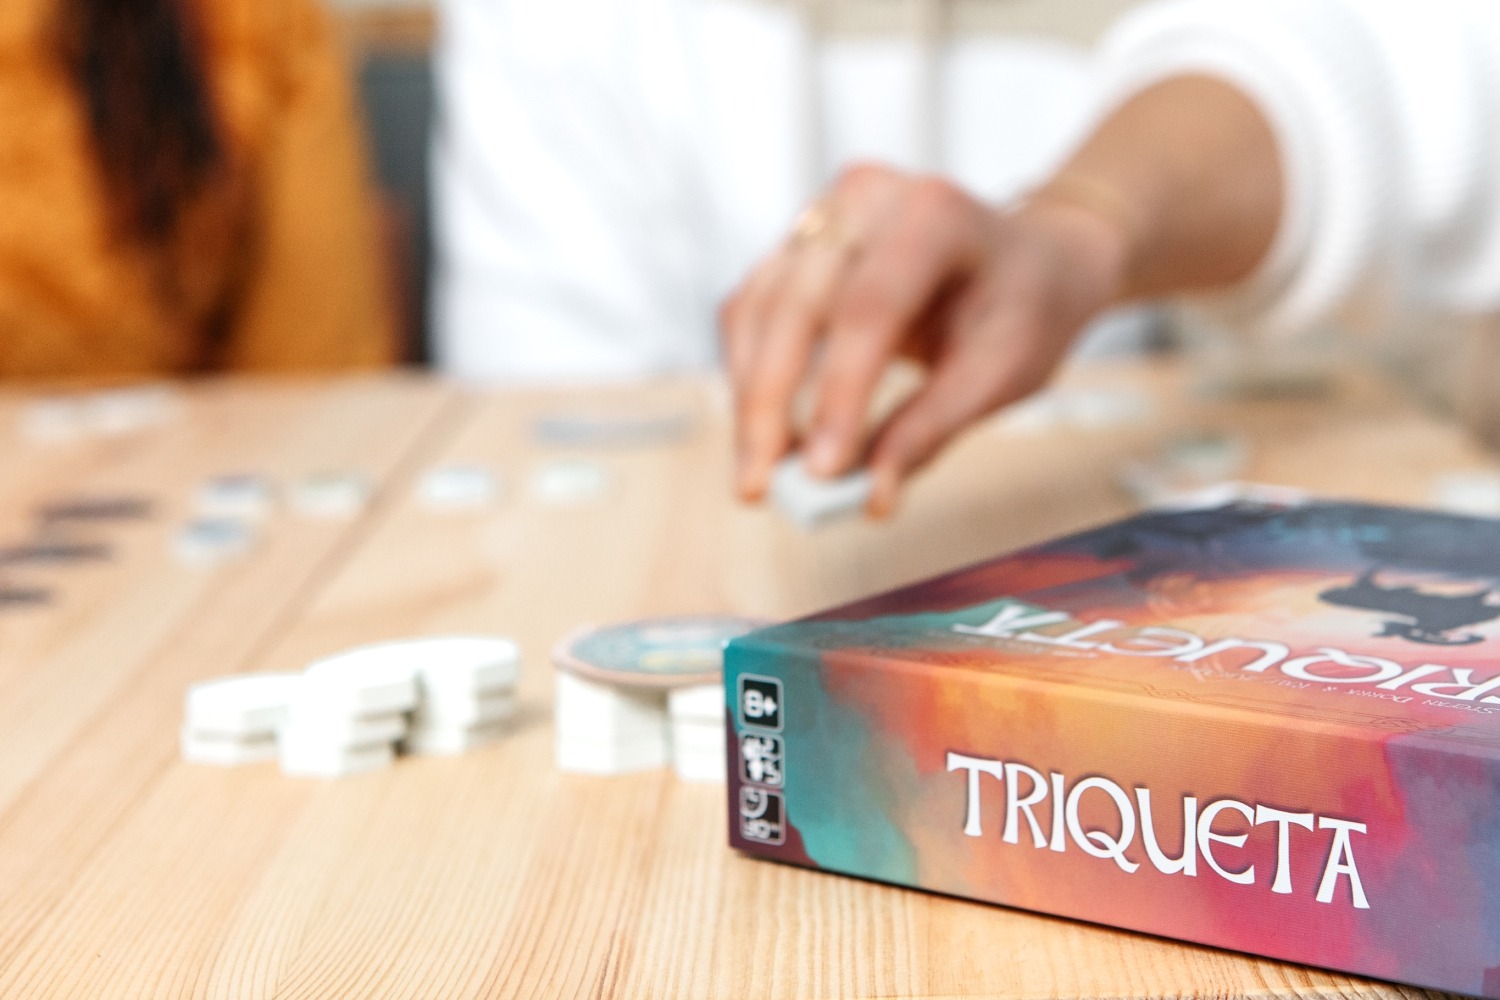 Triqueta Gigamic jeu de société boardgame photography 